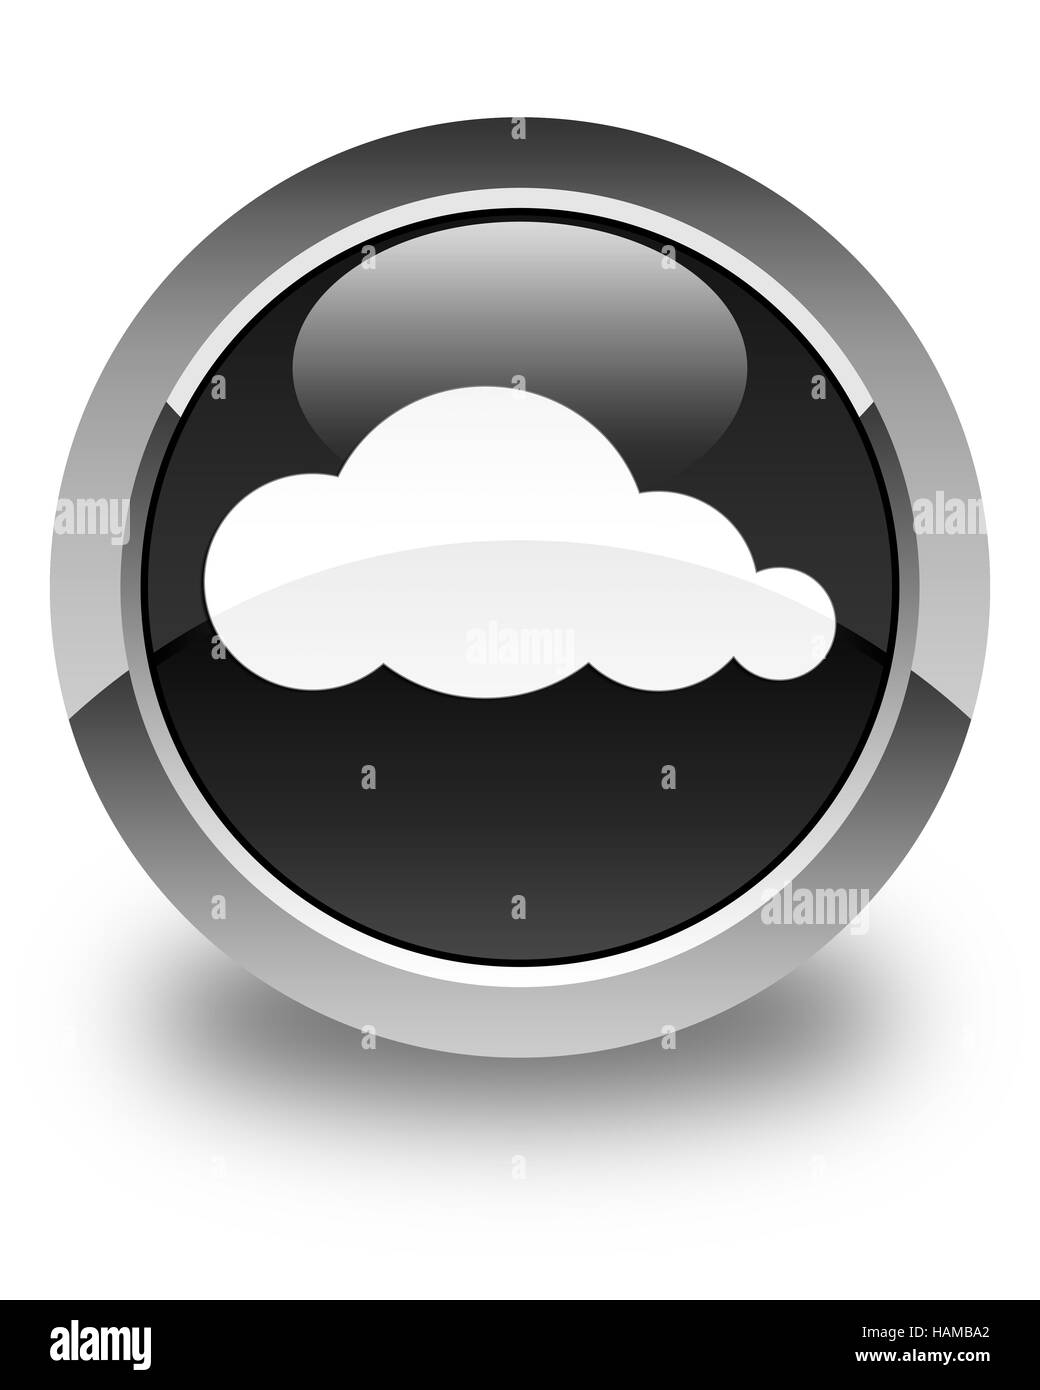 Wolkensymbol isoliert auf abstrakte Darstellung glänzend schwarzen runden Knopf Stockfoto